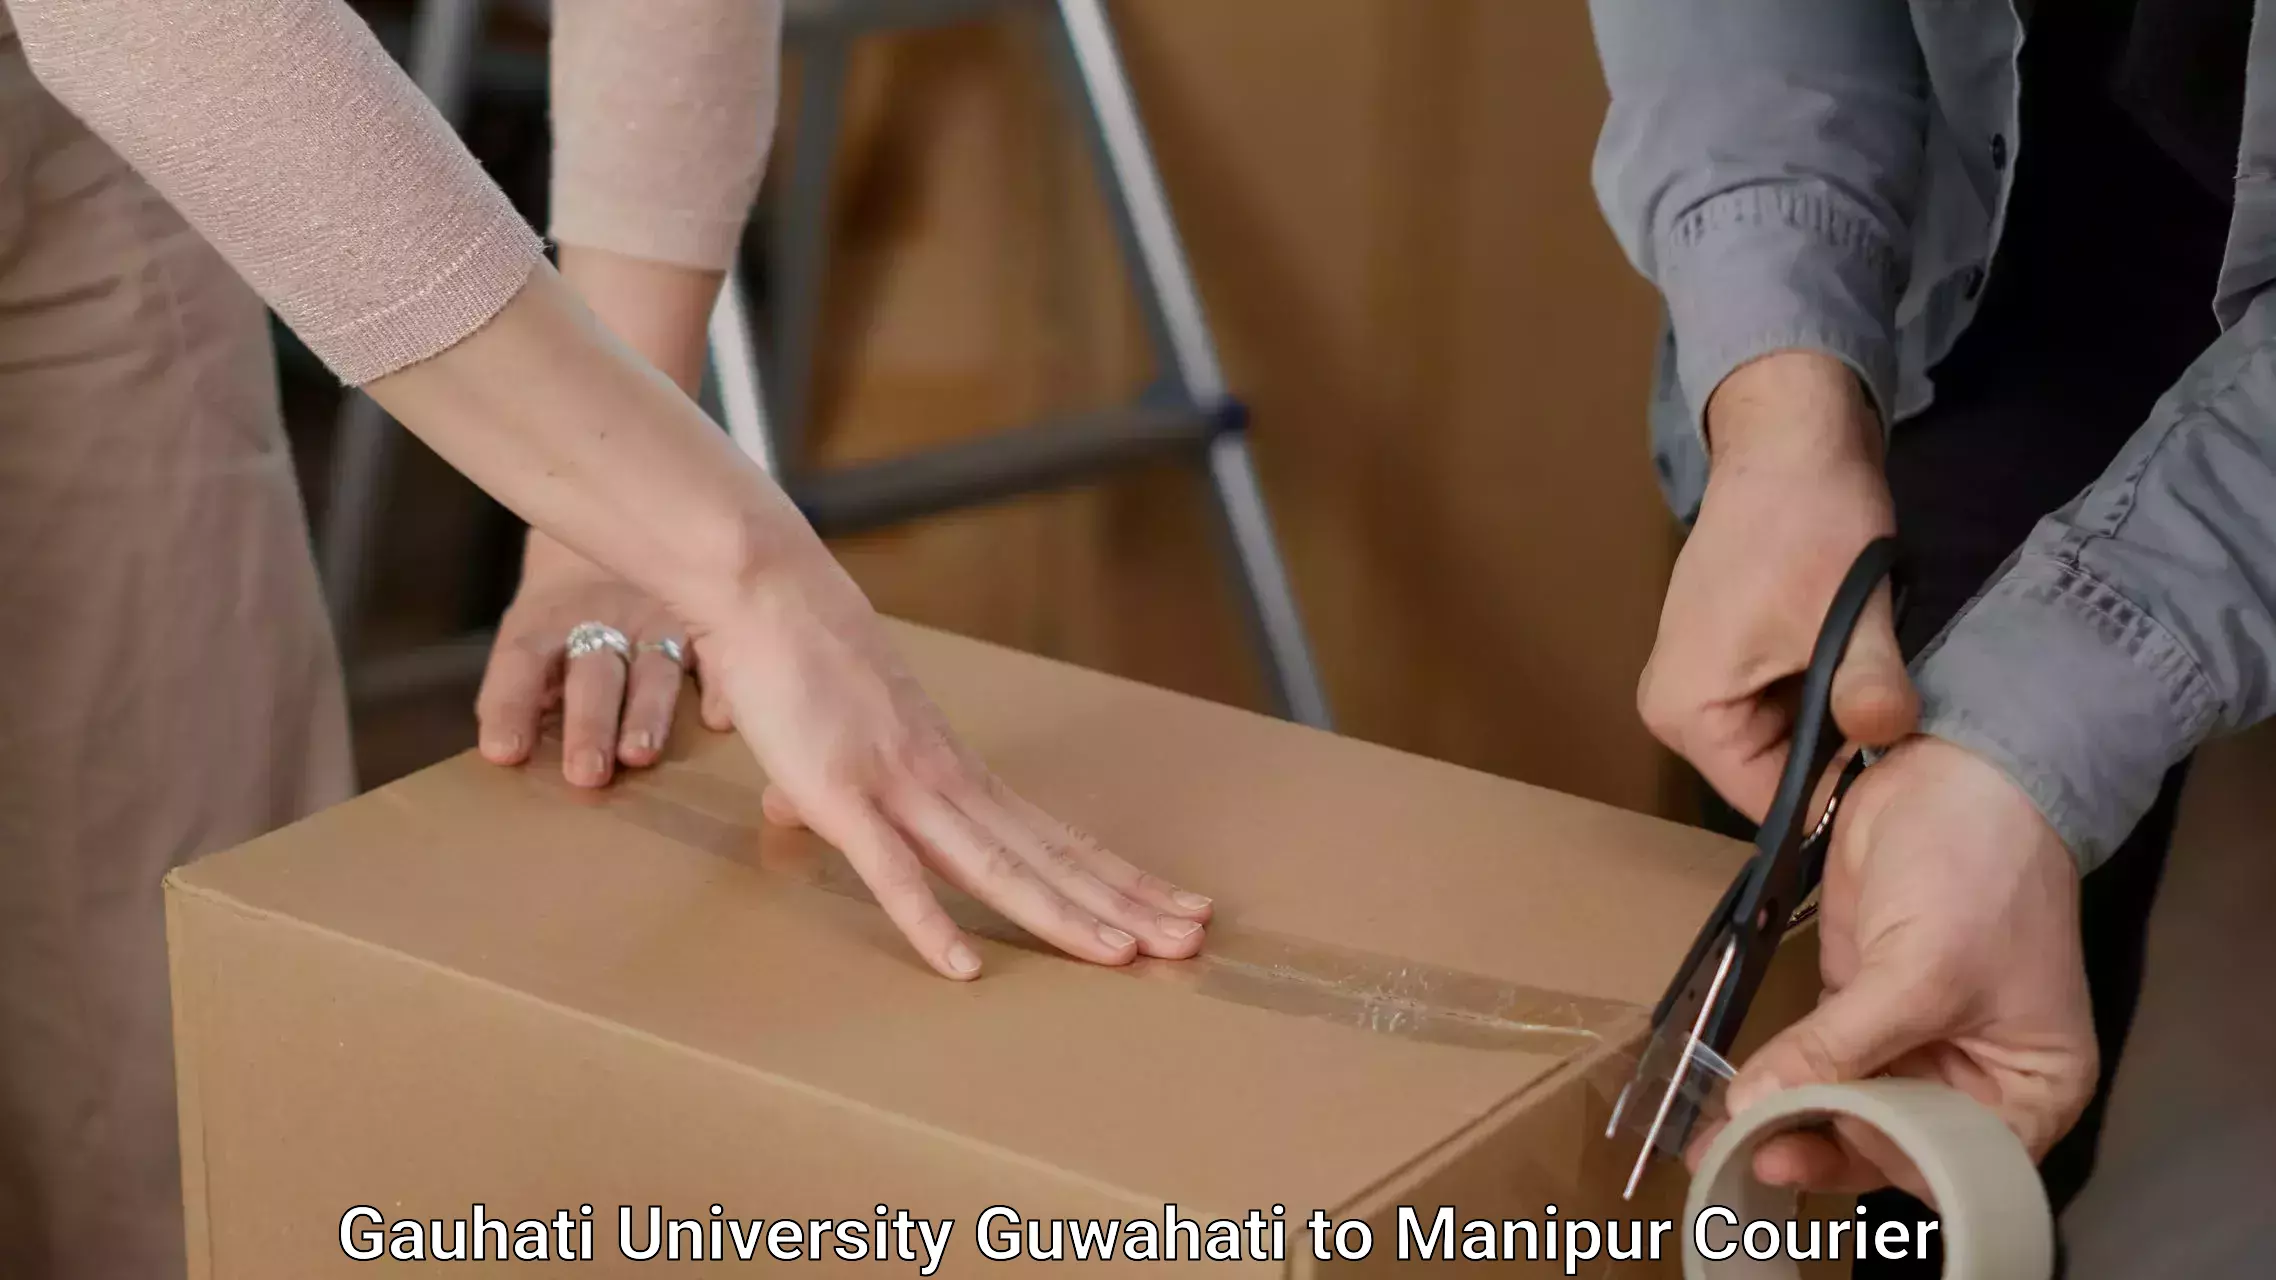 Furniture transport services Gauhati University Guwahati to NIT Manipur